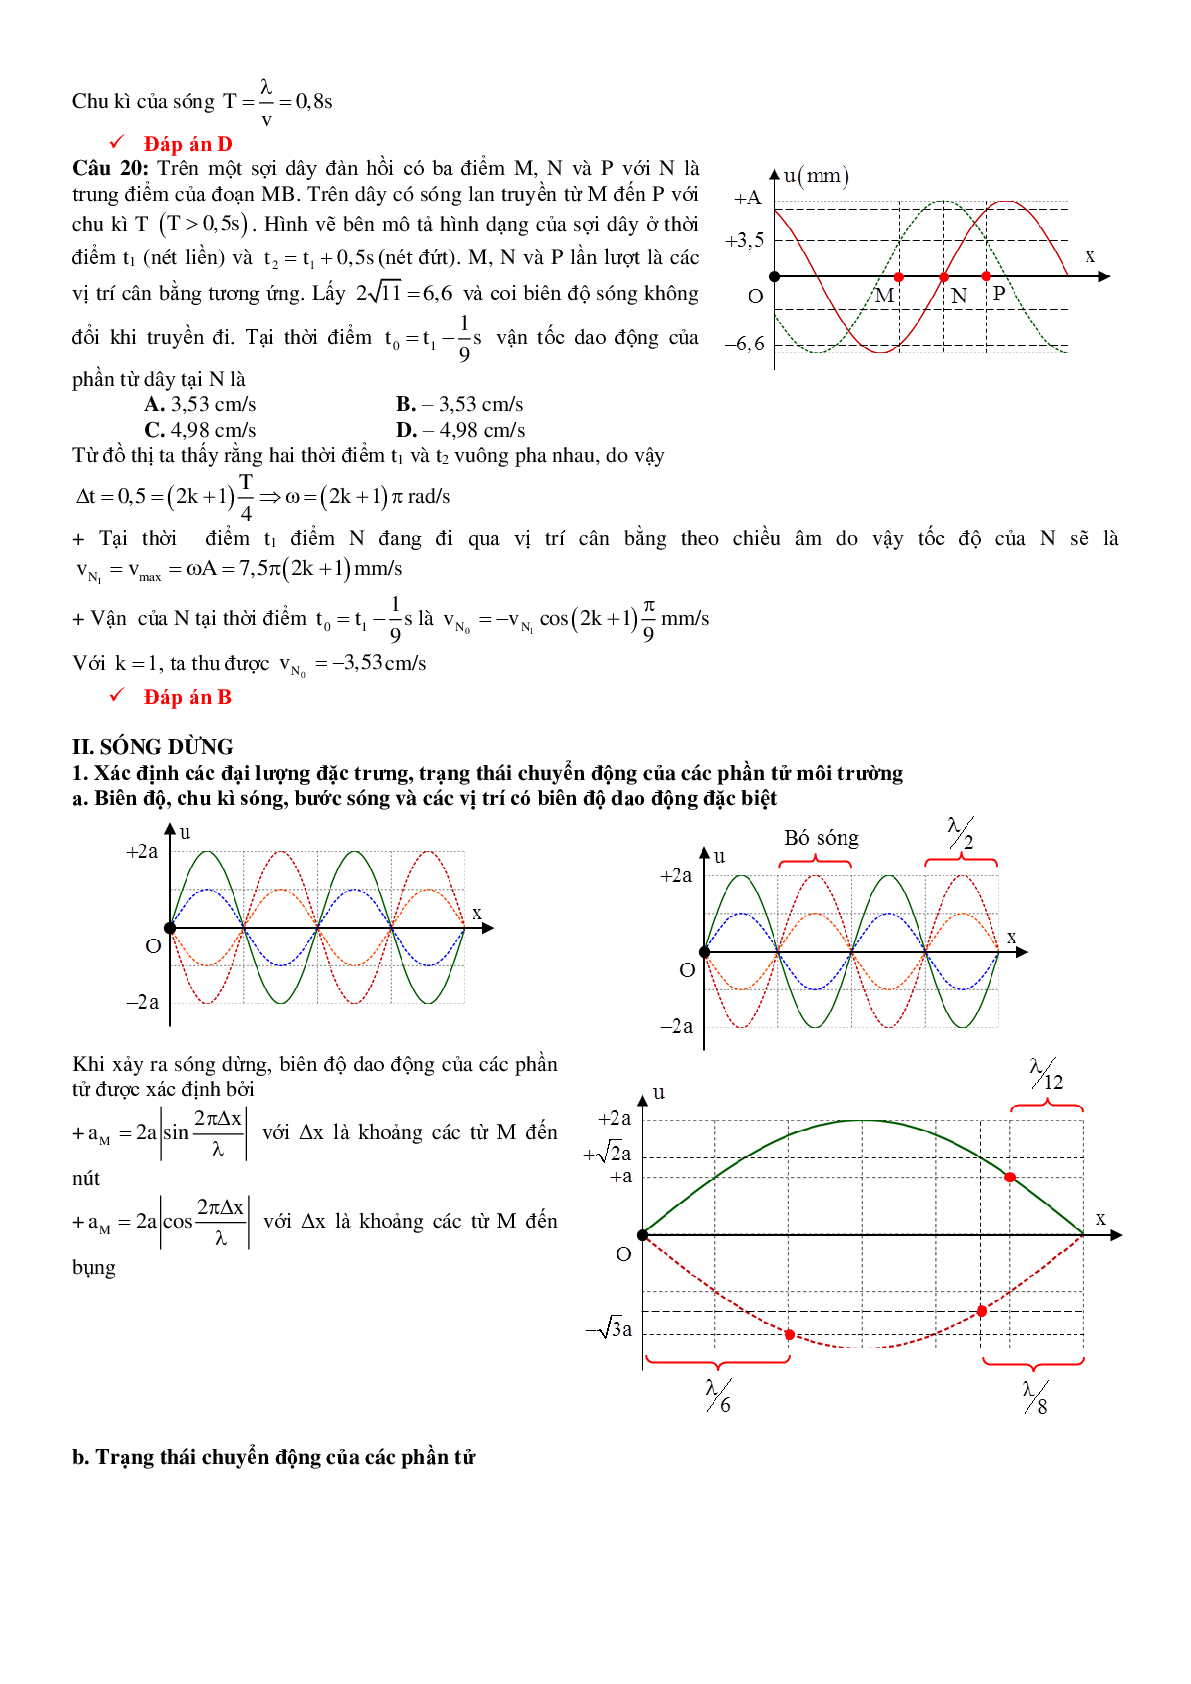 Lý thuyết, bài tập Đồ thị sóng cơ có đáp án (trang 9)